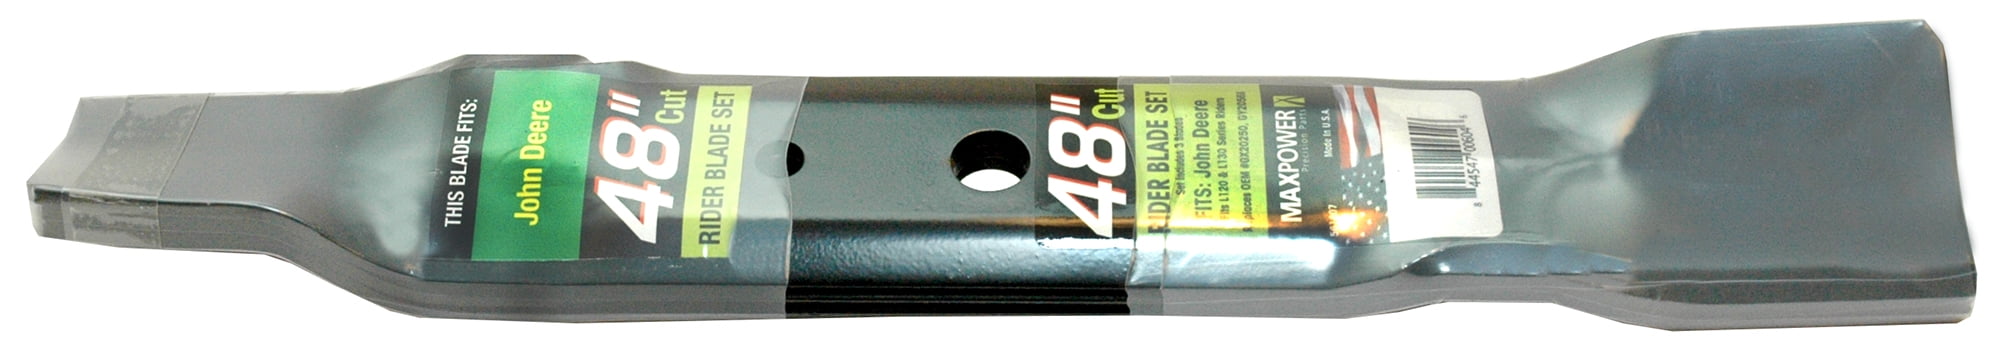 John Deere OEM #LG195 Maintenance Kit & #M148613 Blades for Model LX277